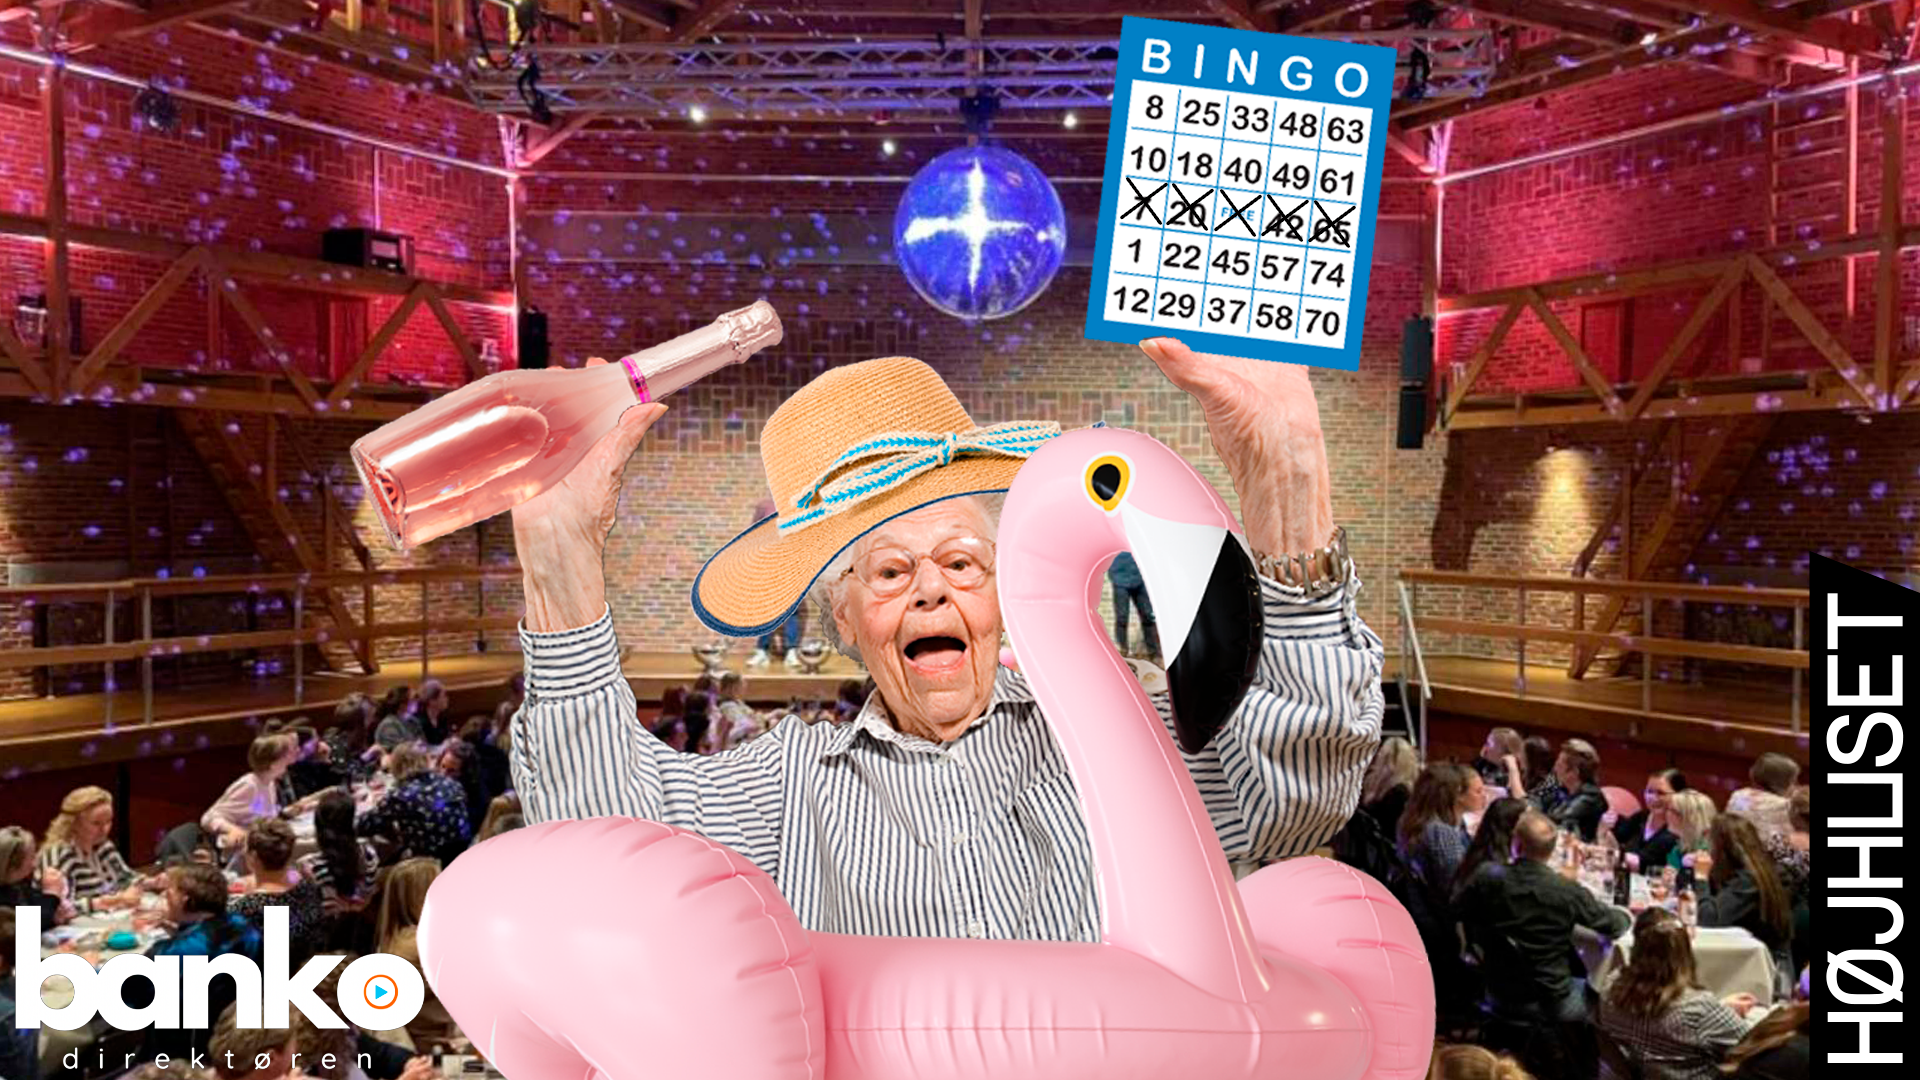 bingo eventbillede